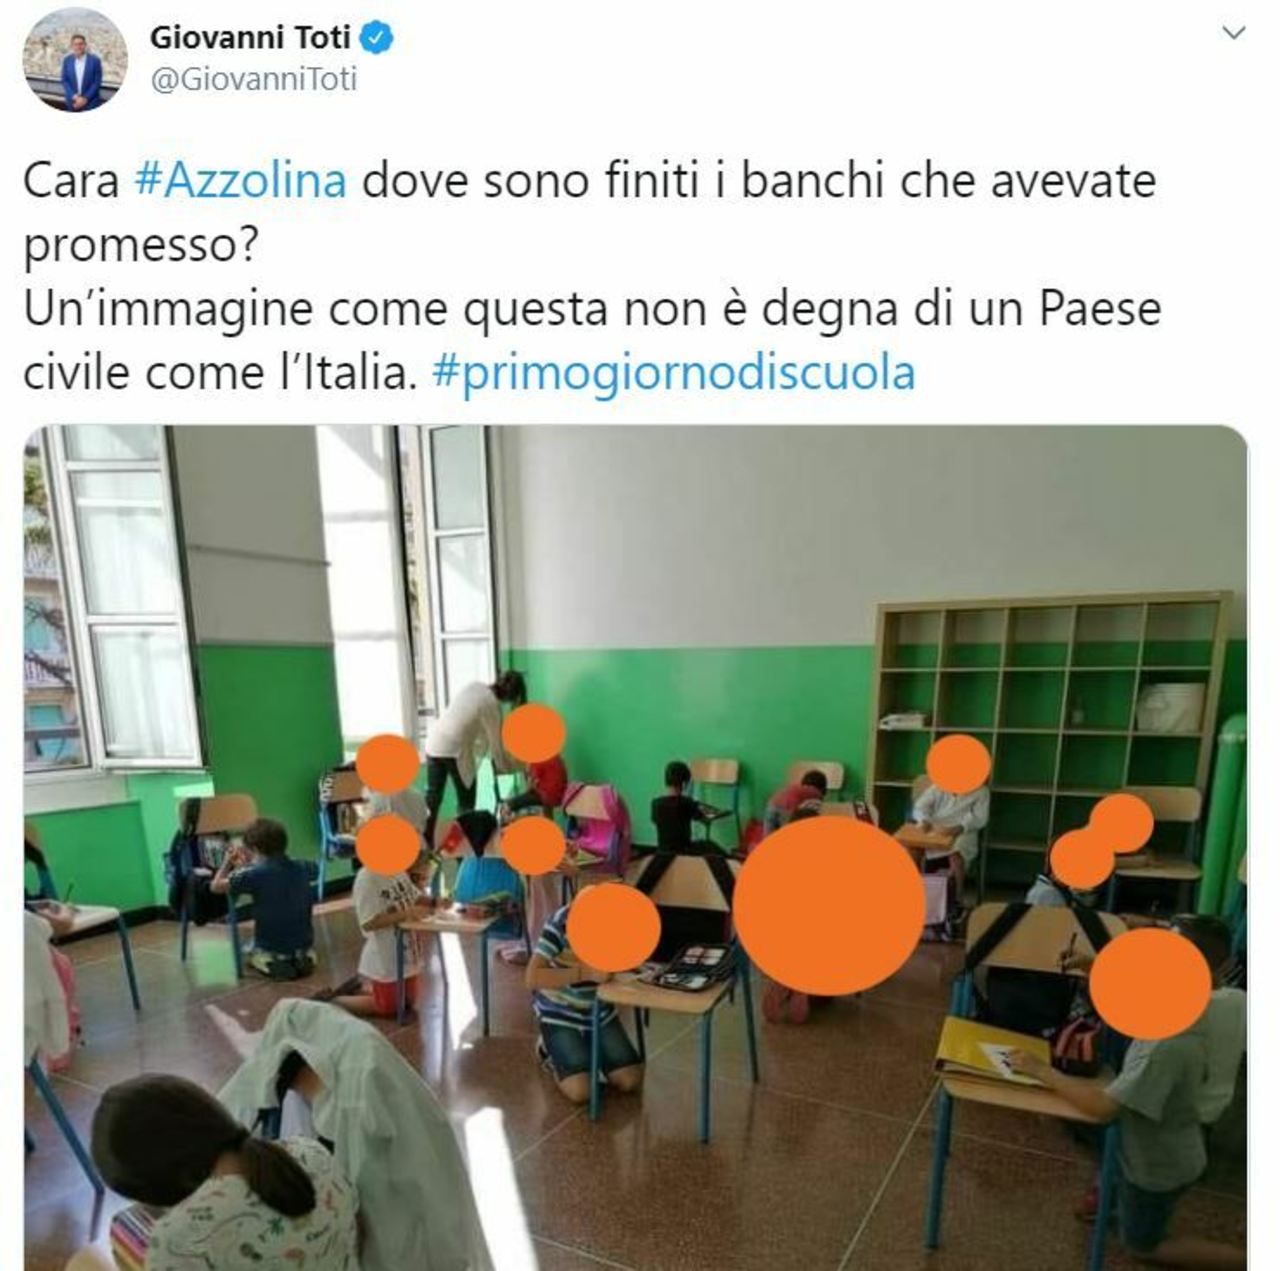 Scuola, la foto pubblicata da Toti diventa un ‘caso’ politico in Liguria